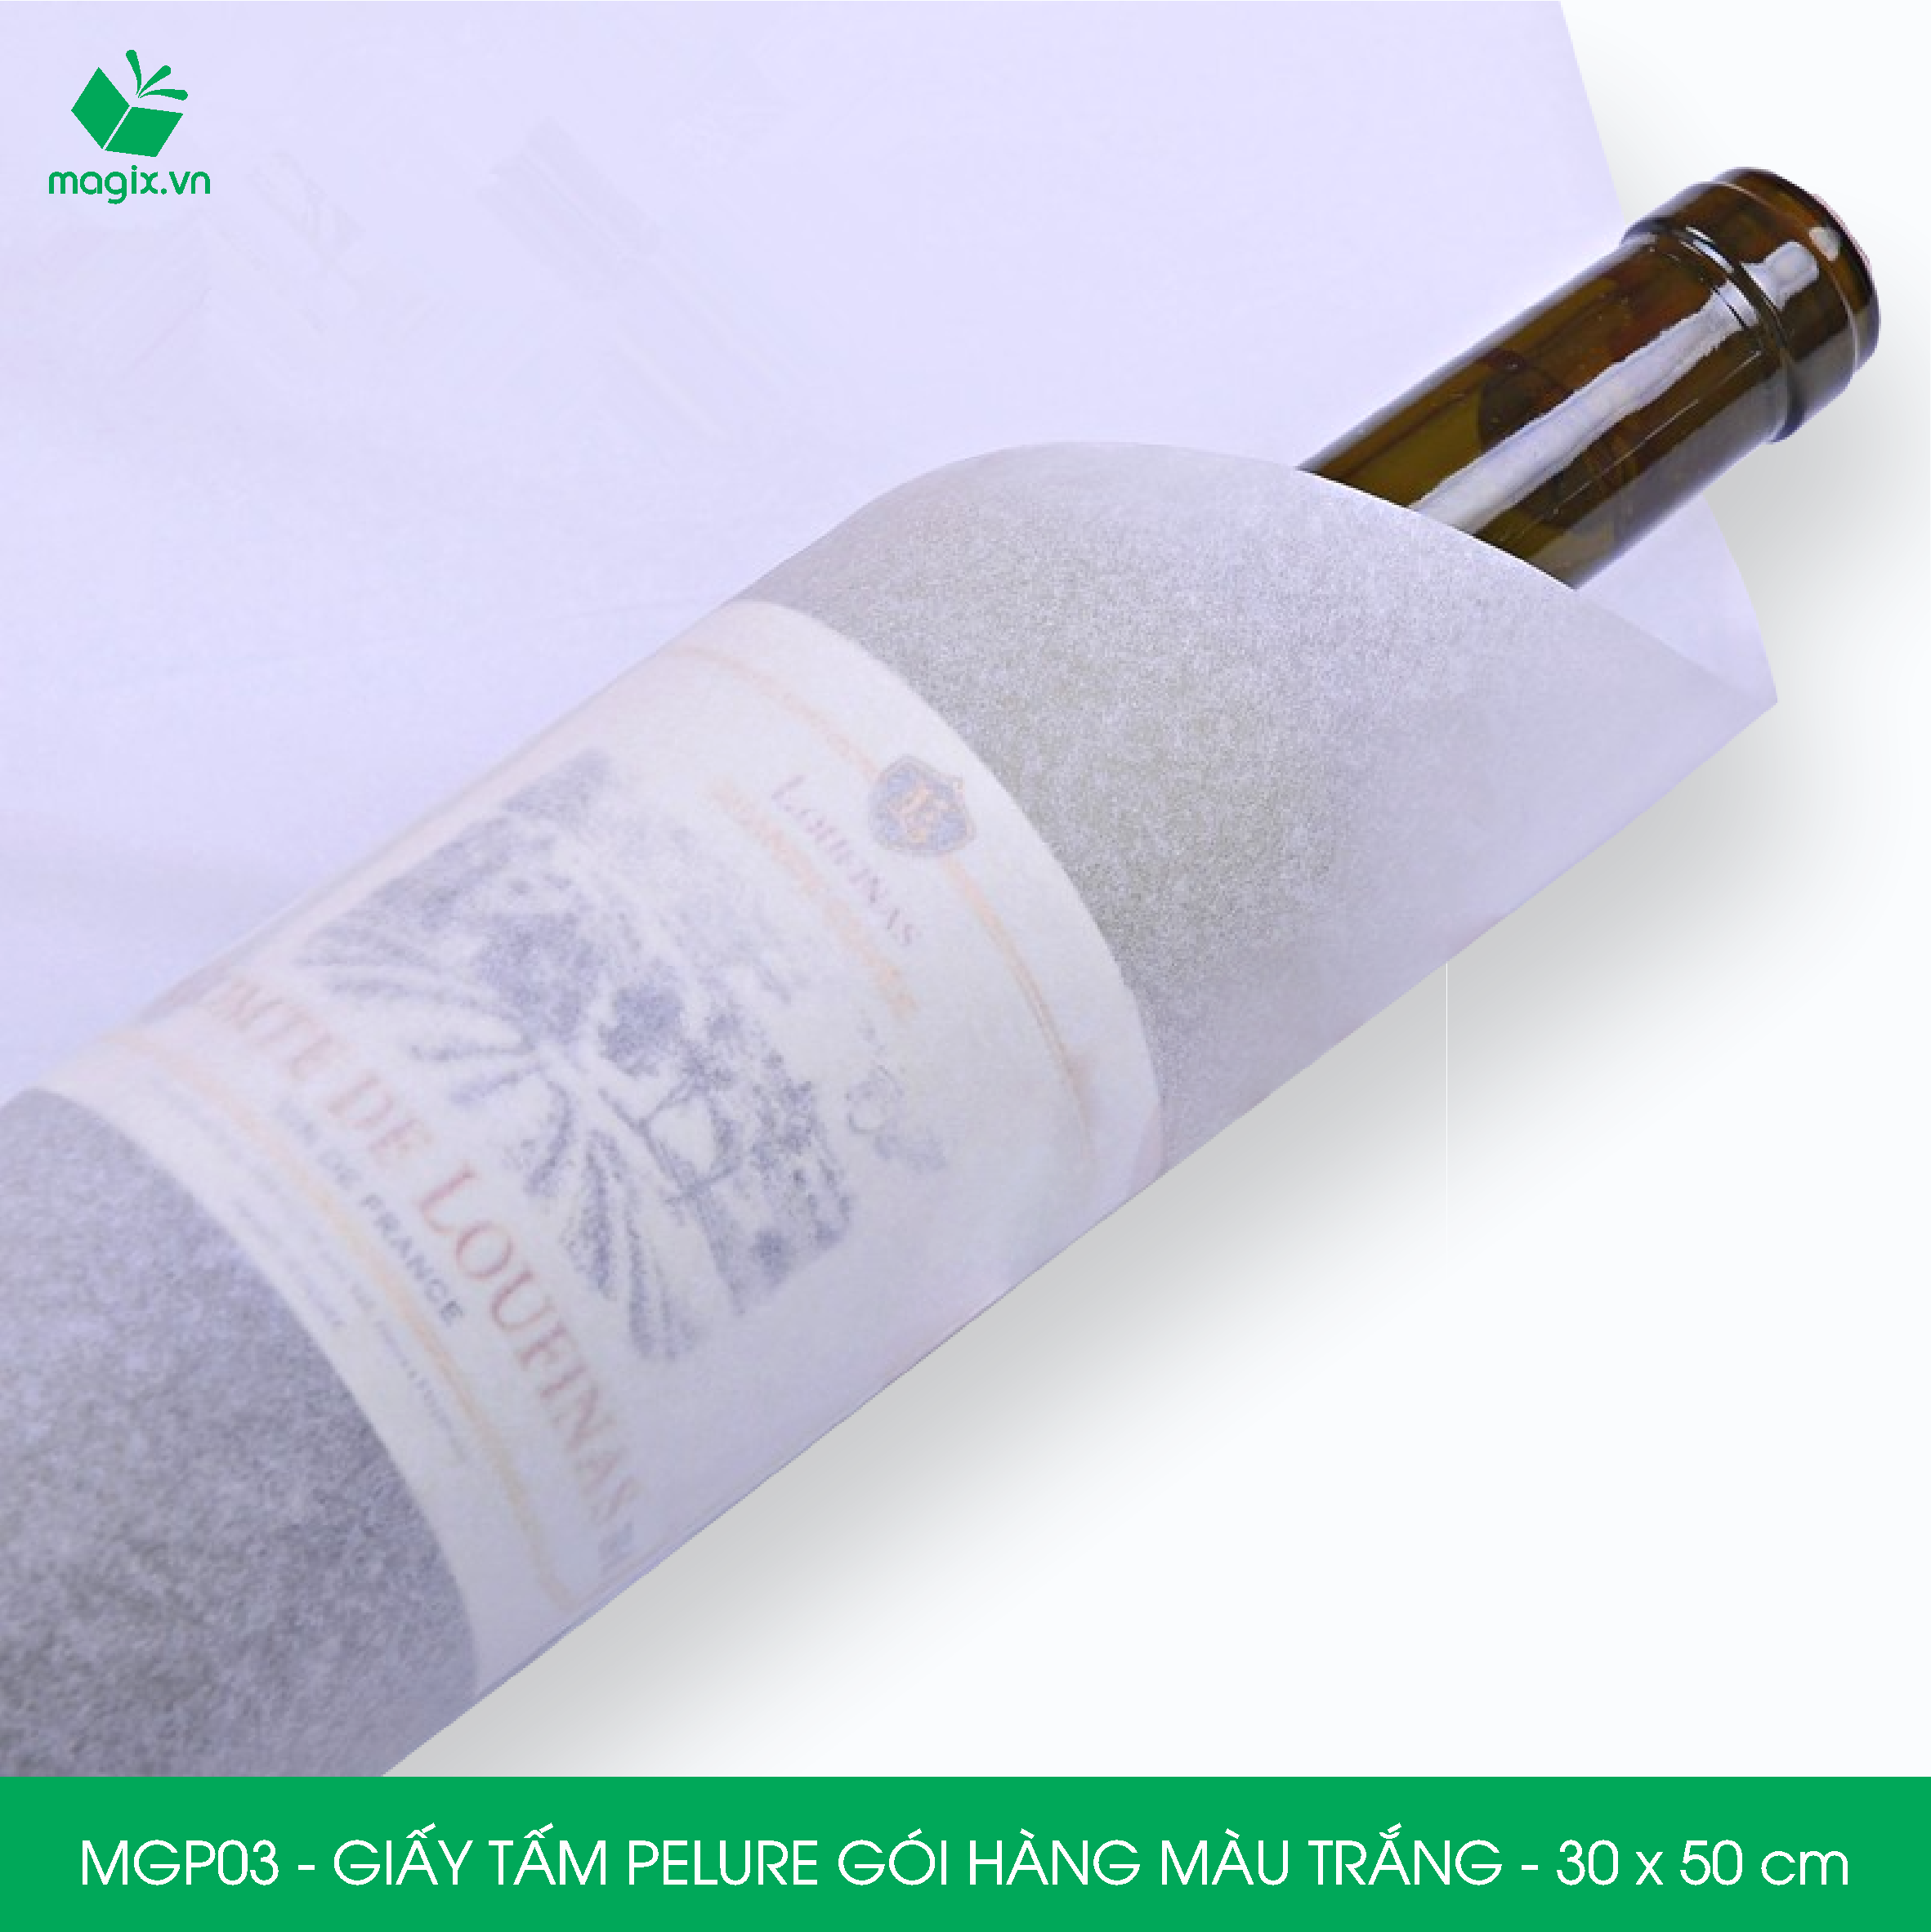 MGP03 - 30x50 cm - 500 tấm giấy Pelure trắng gói hàng, giấy chống ẩm 2 mặt mịn, giấy bọc hàng thời trang